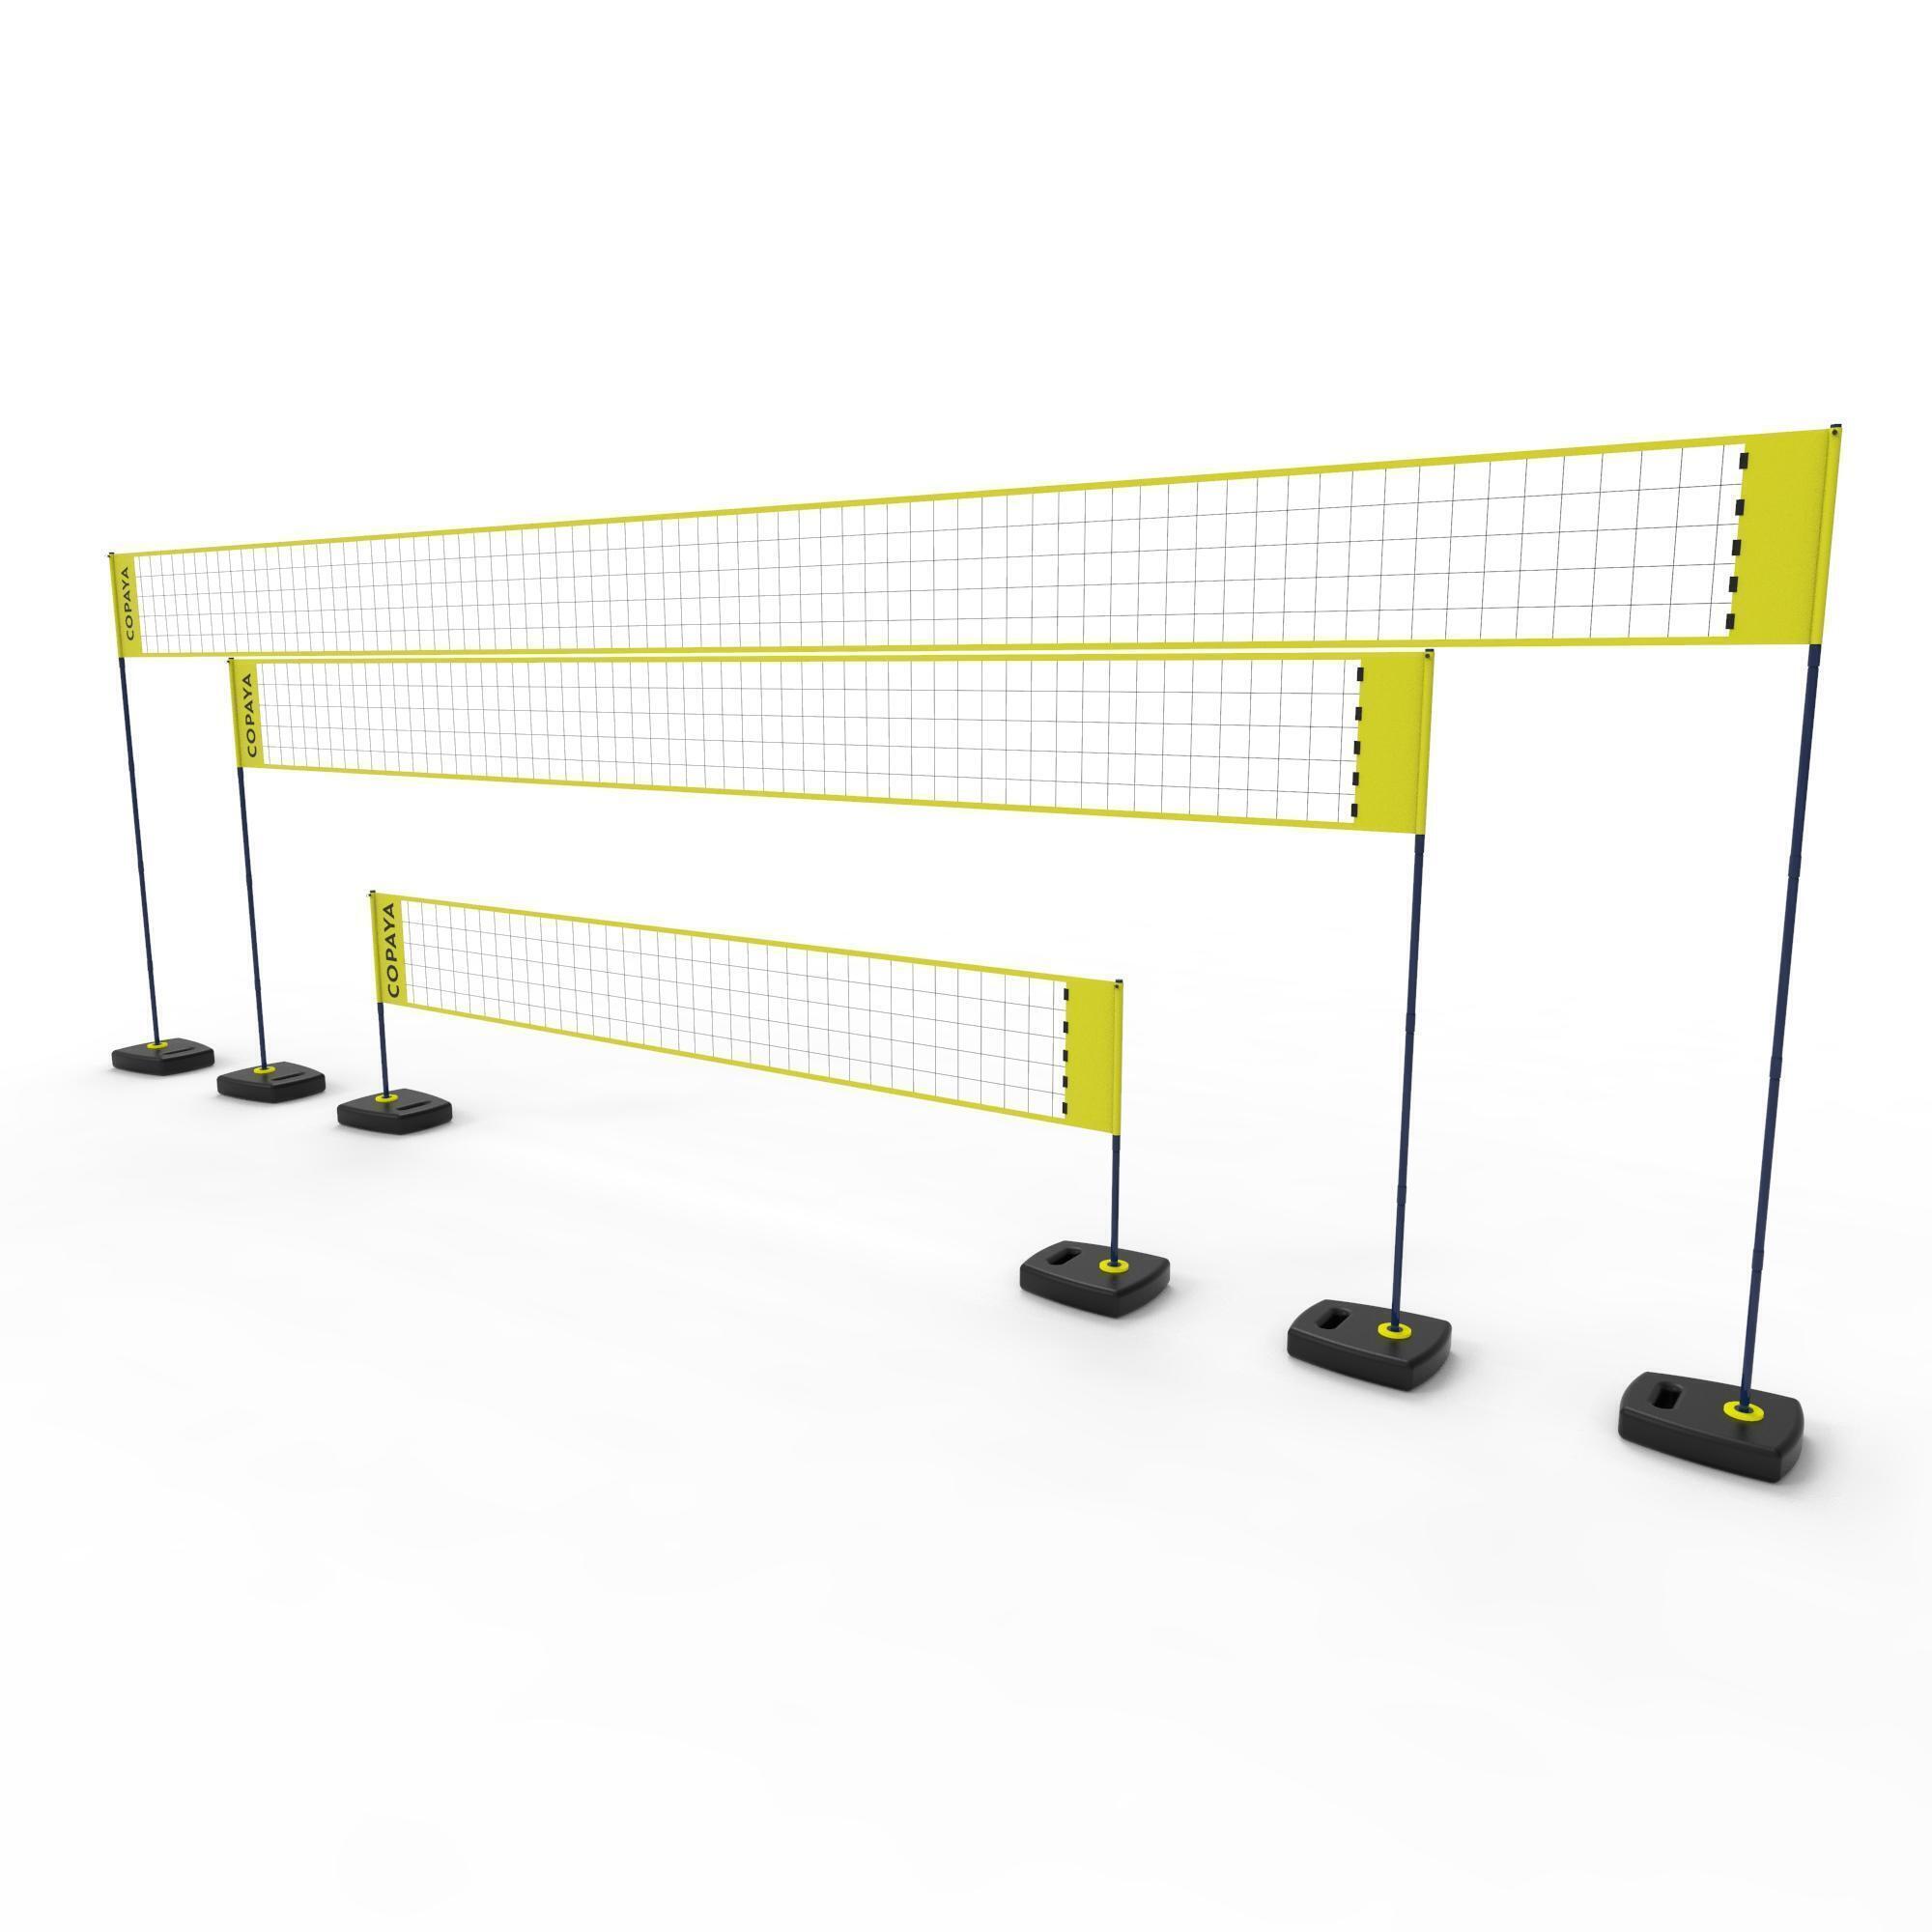 Сетка для пляжного волейбола регулируемая BV500 желтая COPAYA, желтый черный